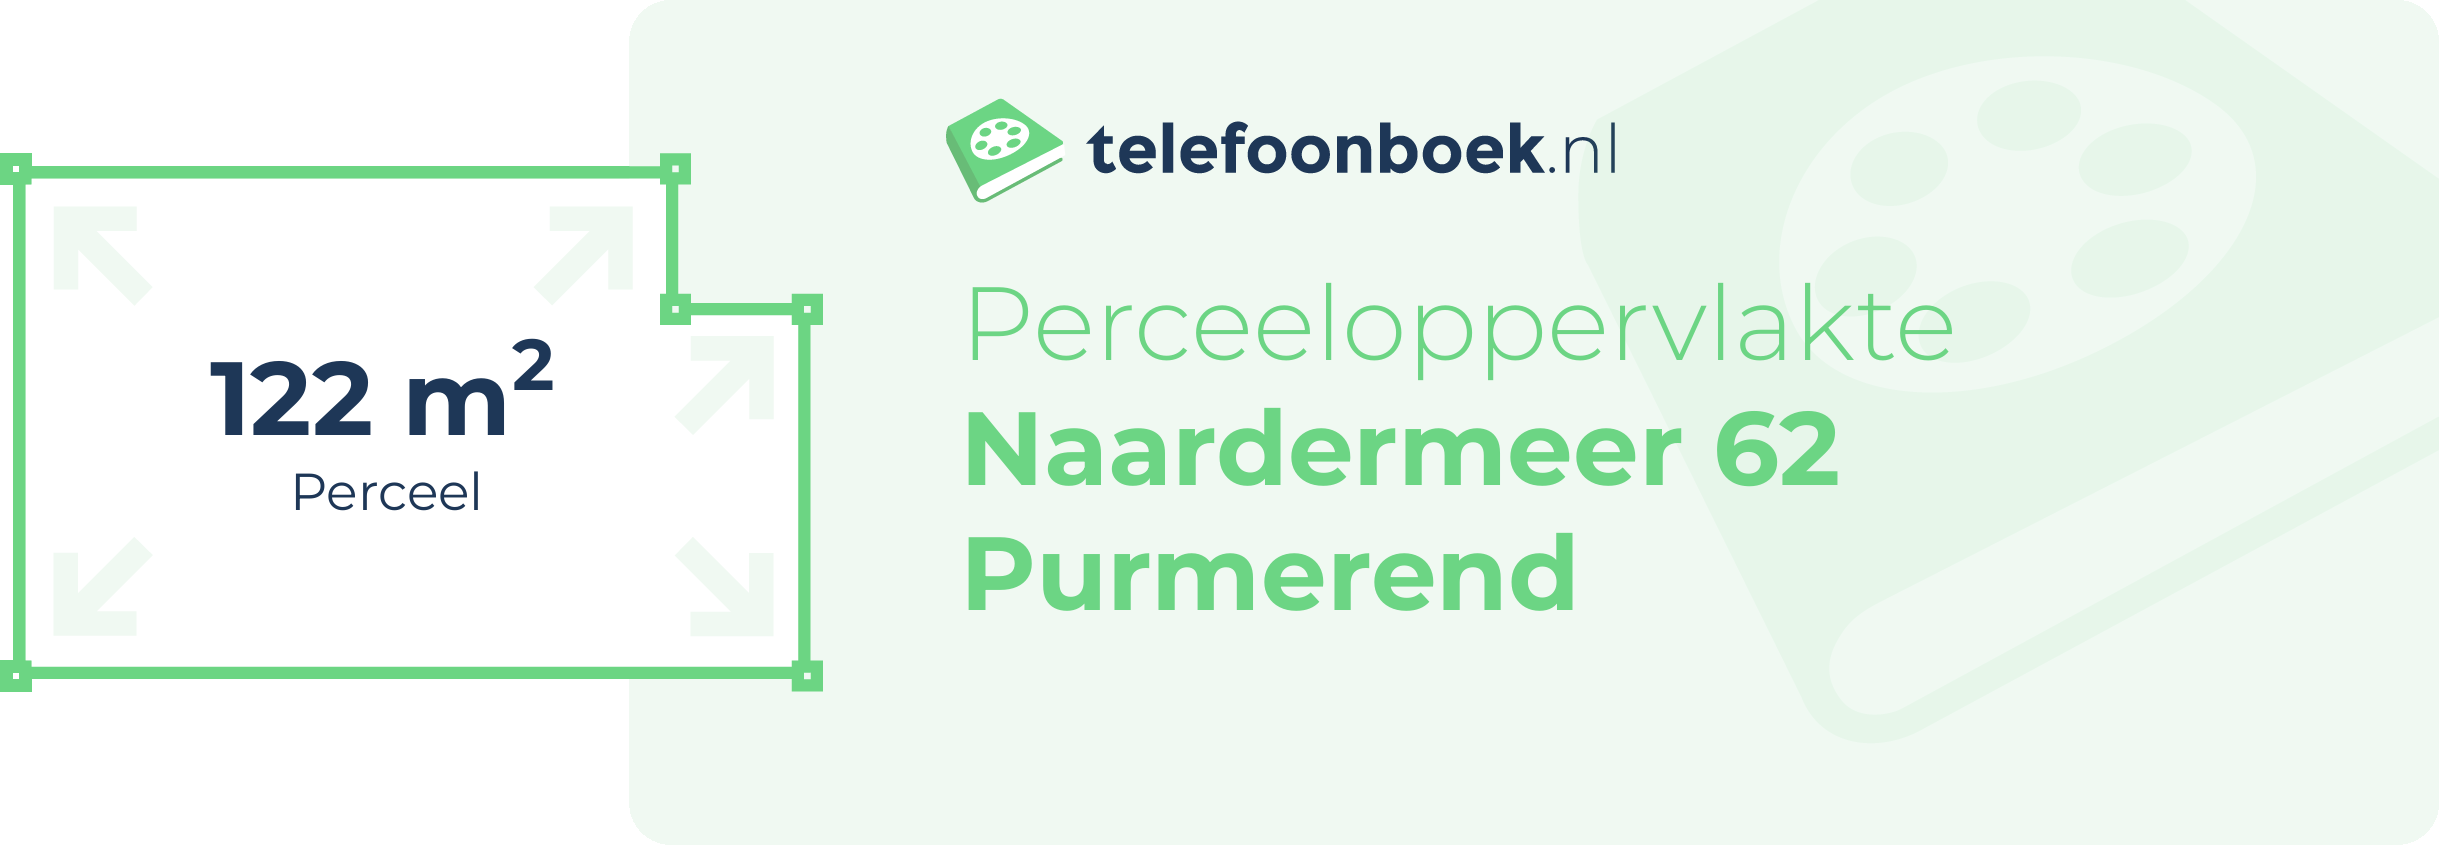 Perceeloppervlakte Naardermeer 62 Purmerend